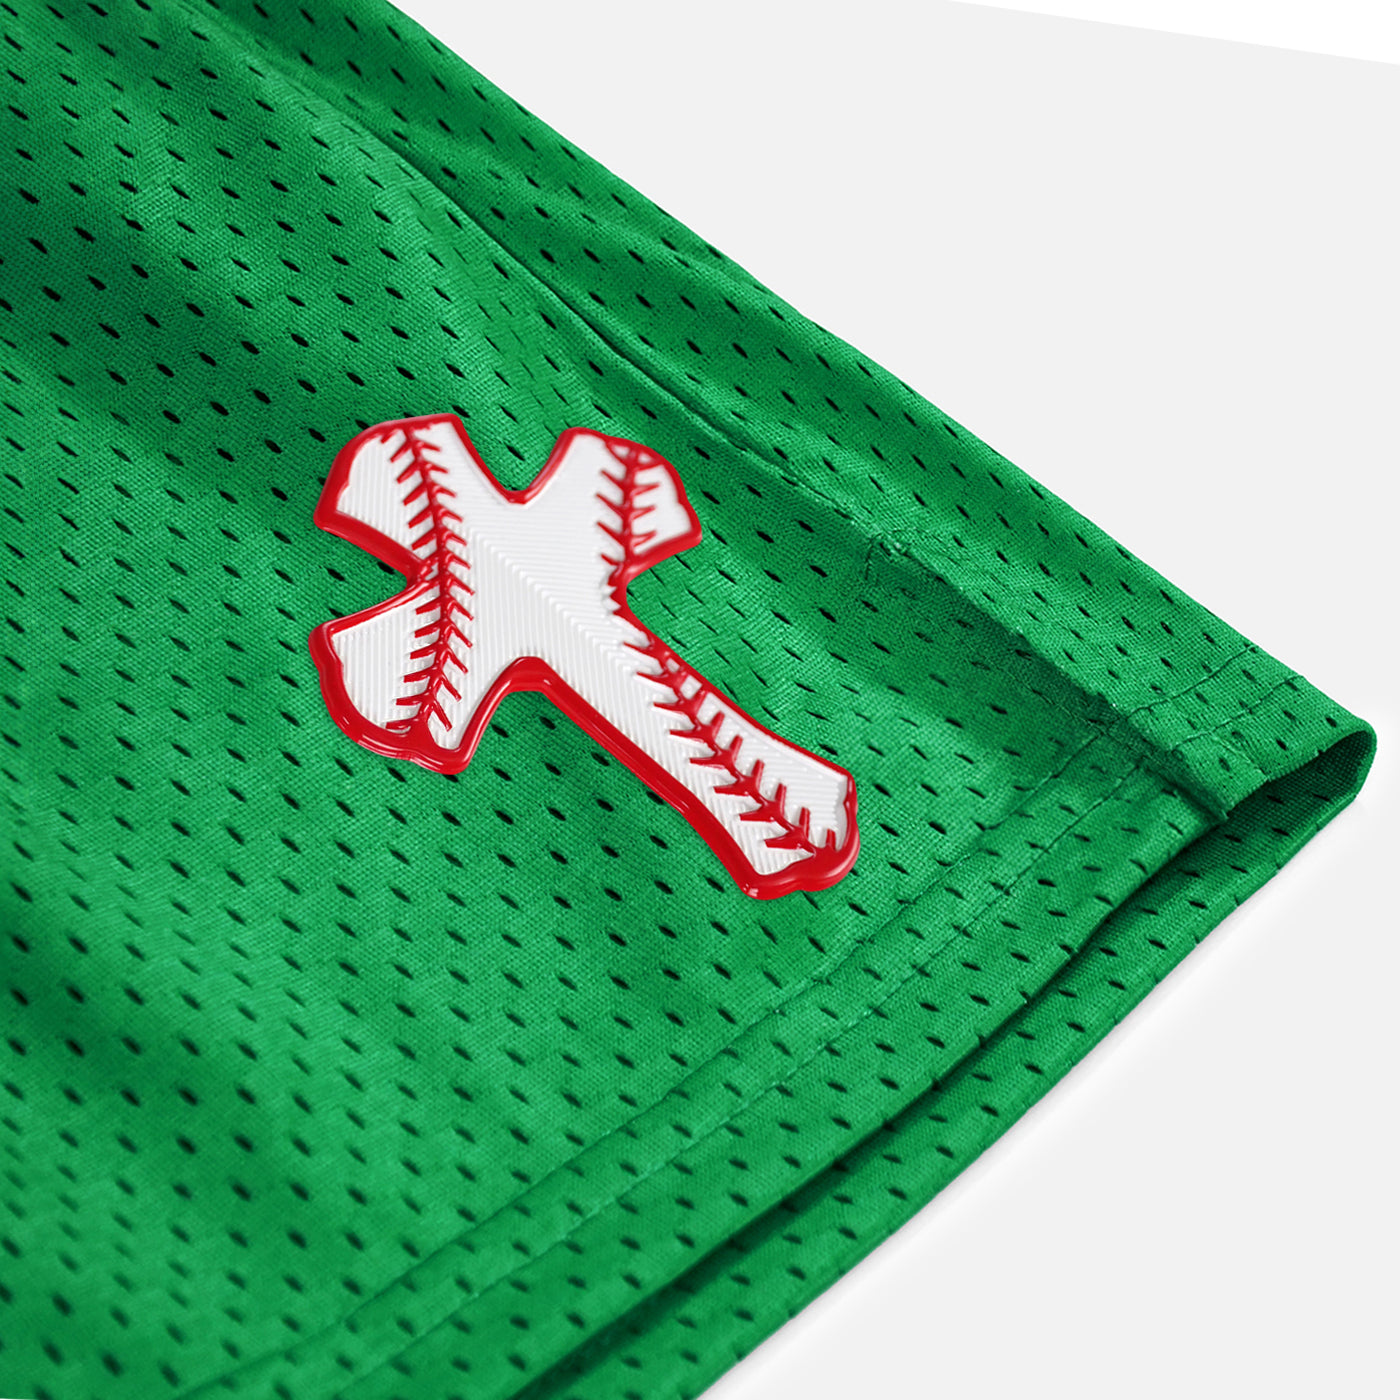 Baseball Cross Patch Shorts - 7"